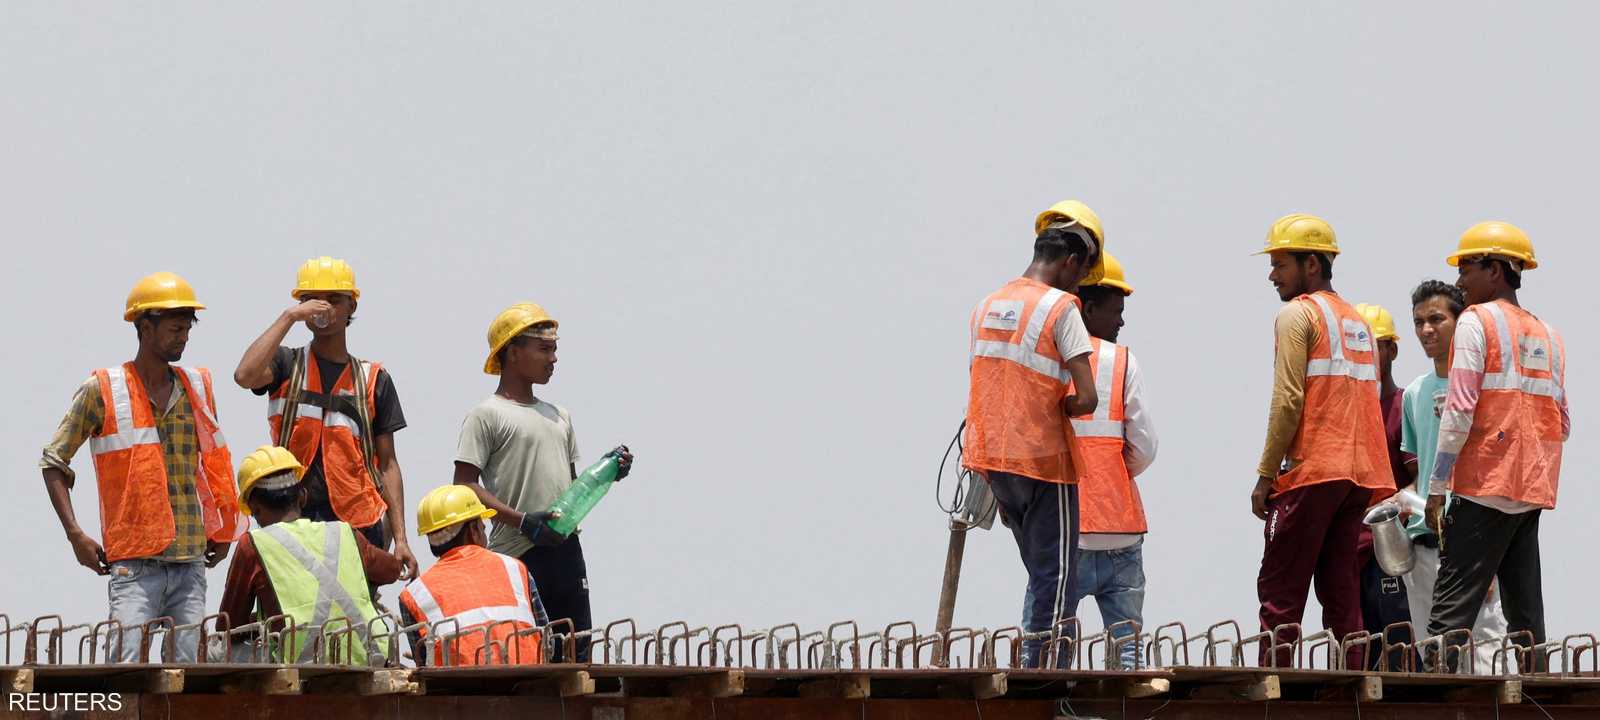 الهند بحاجة إلى توفير 115 مليون وظيفة بحلول عام 2030